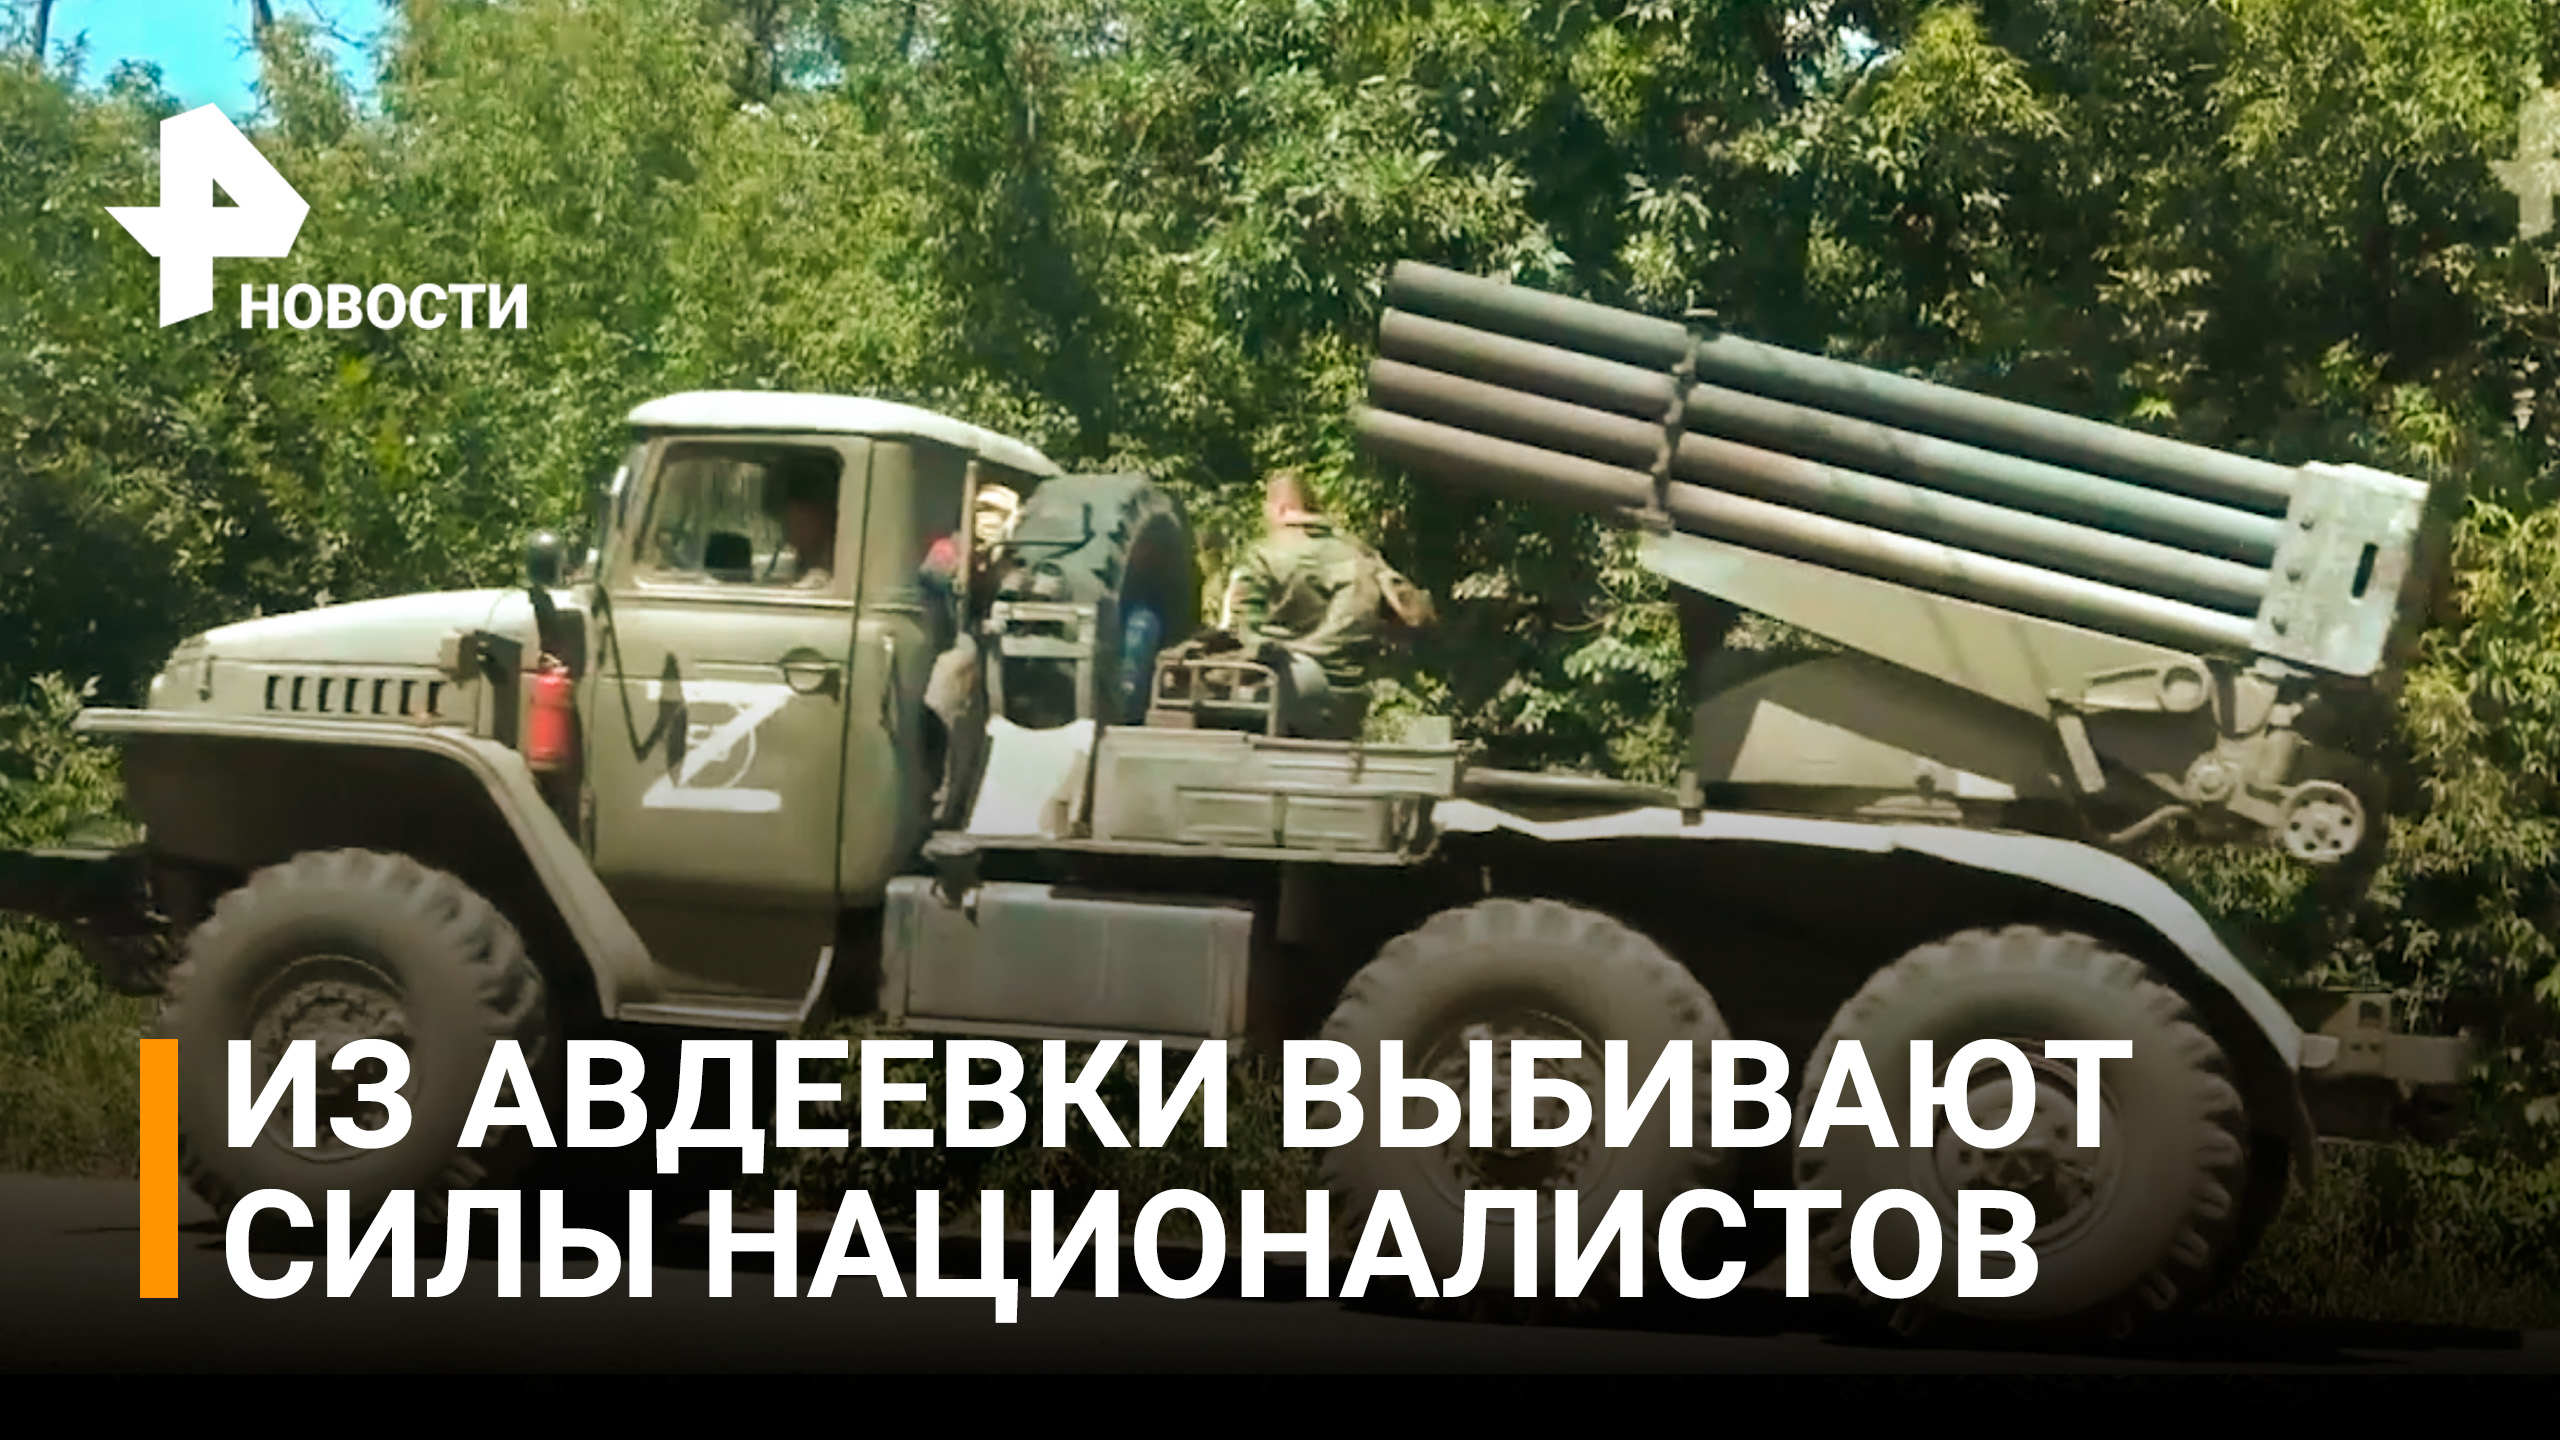 Украинских боевиков выбивают из Авдеевки, откуда ВСУ наносит удары по Донецку / РЕН Новости